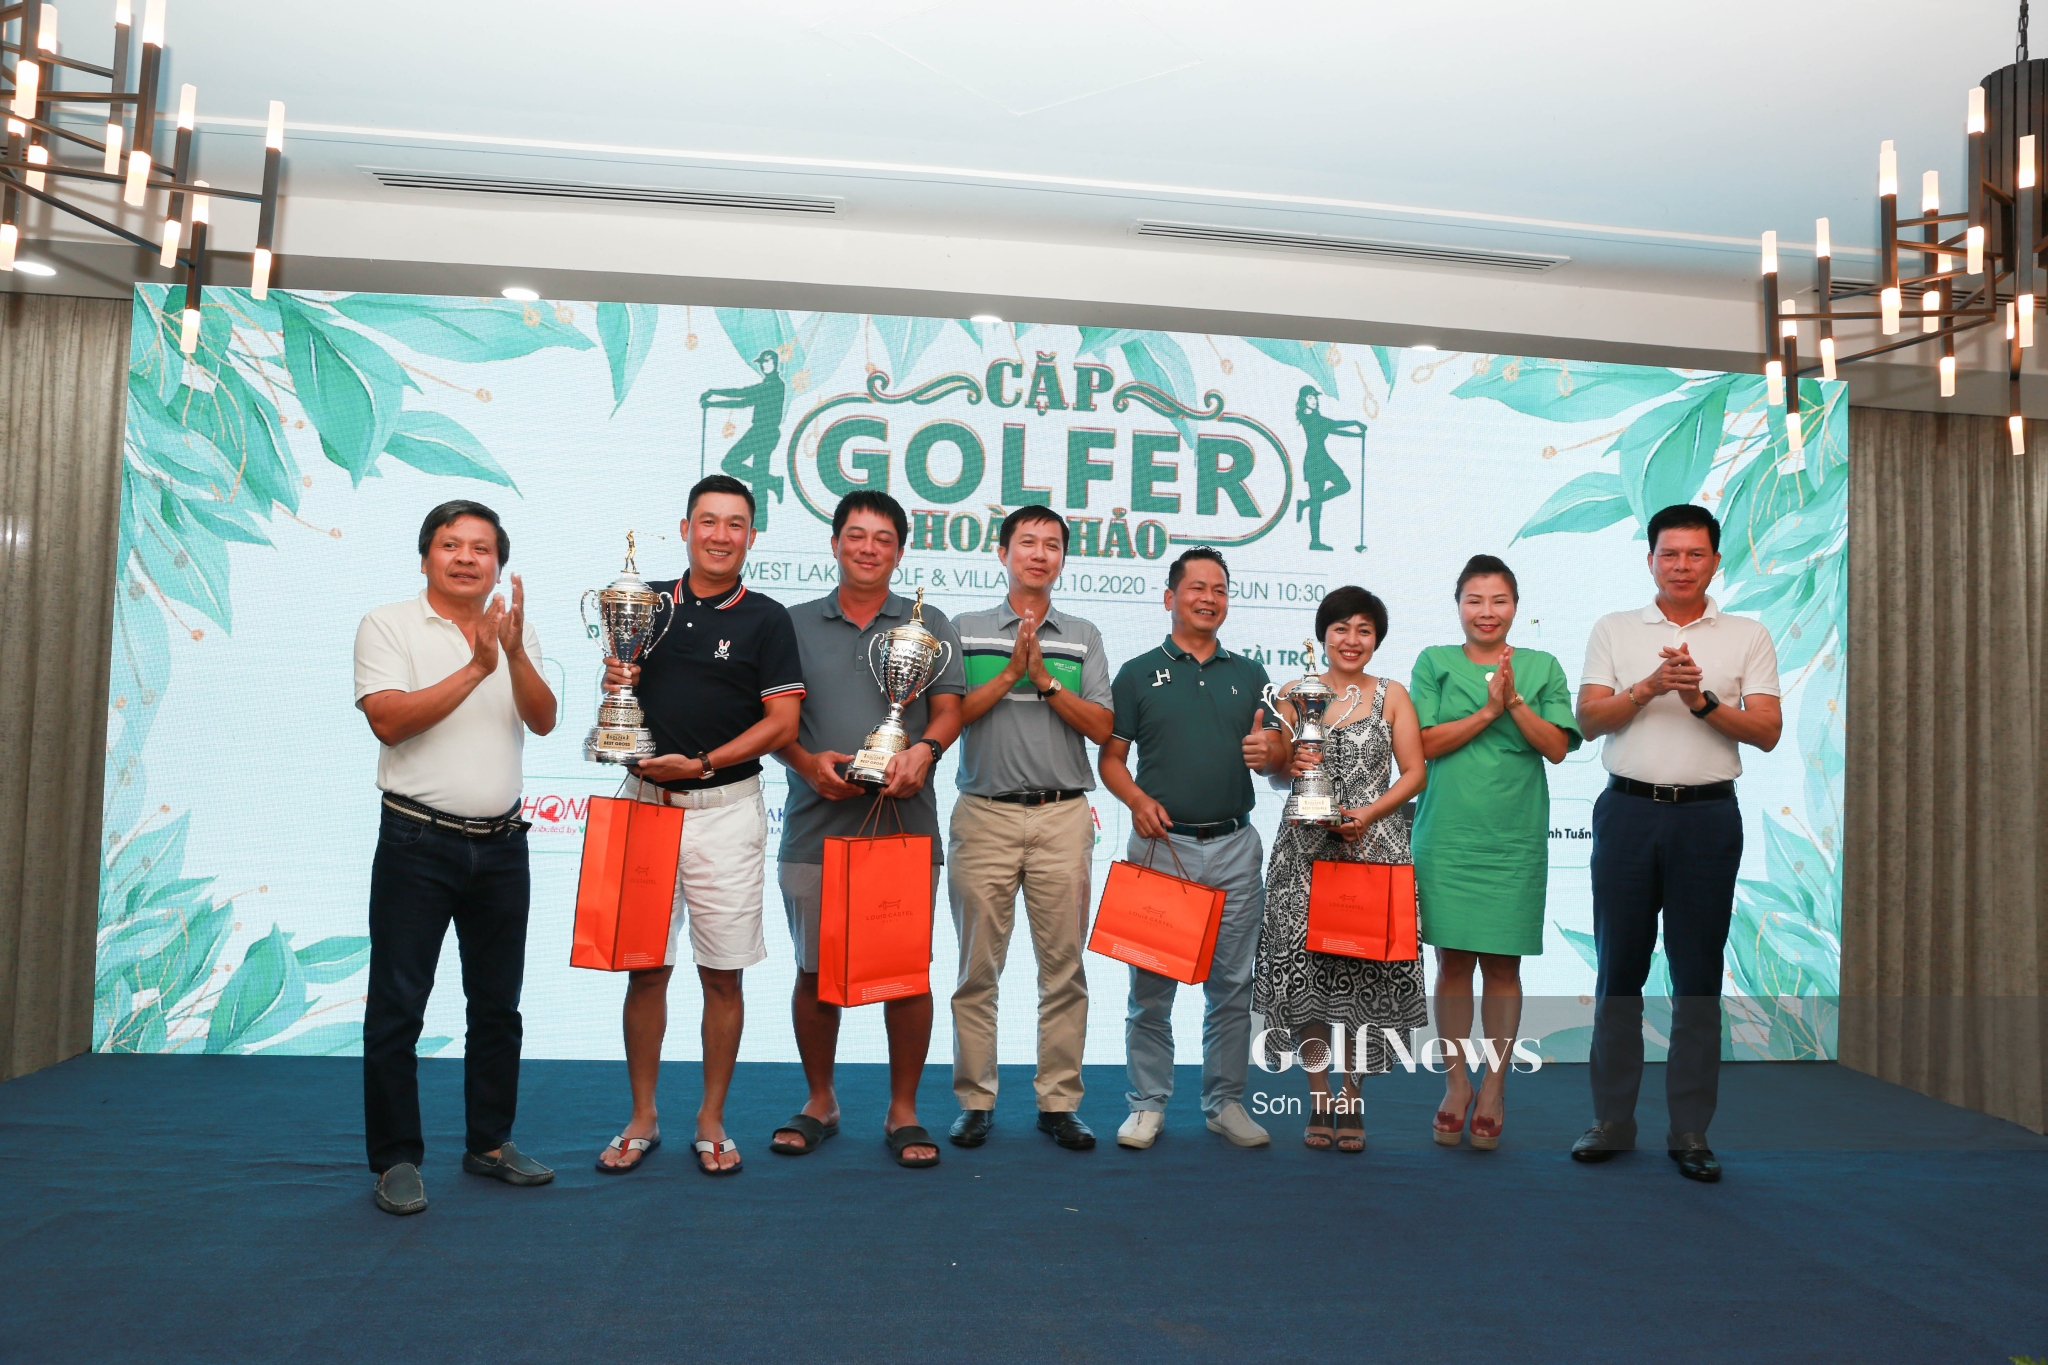 500 triệu đồng quyên góp ủng hộ miền Trung từ giải golf Cặp golfer hoàn hảo 2020